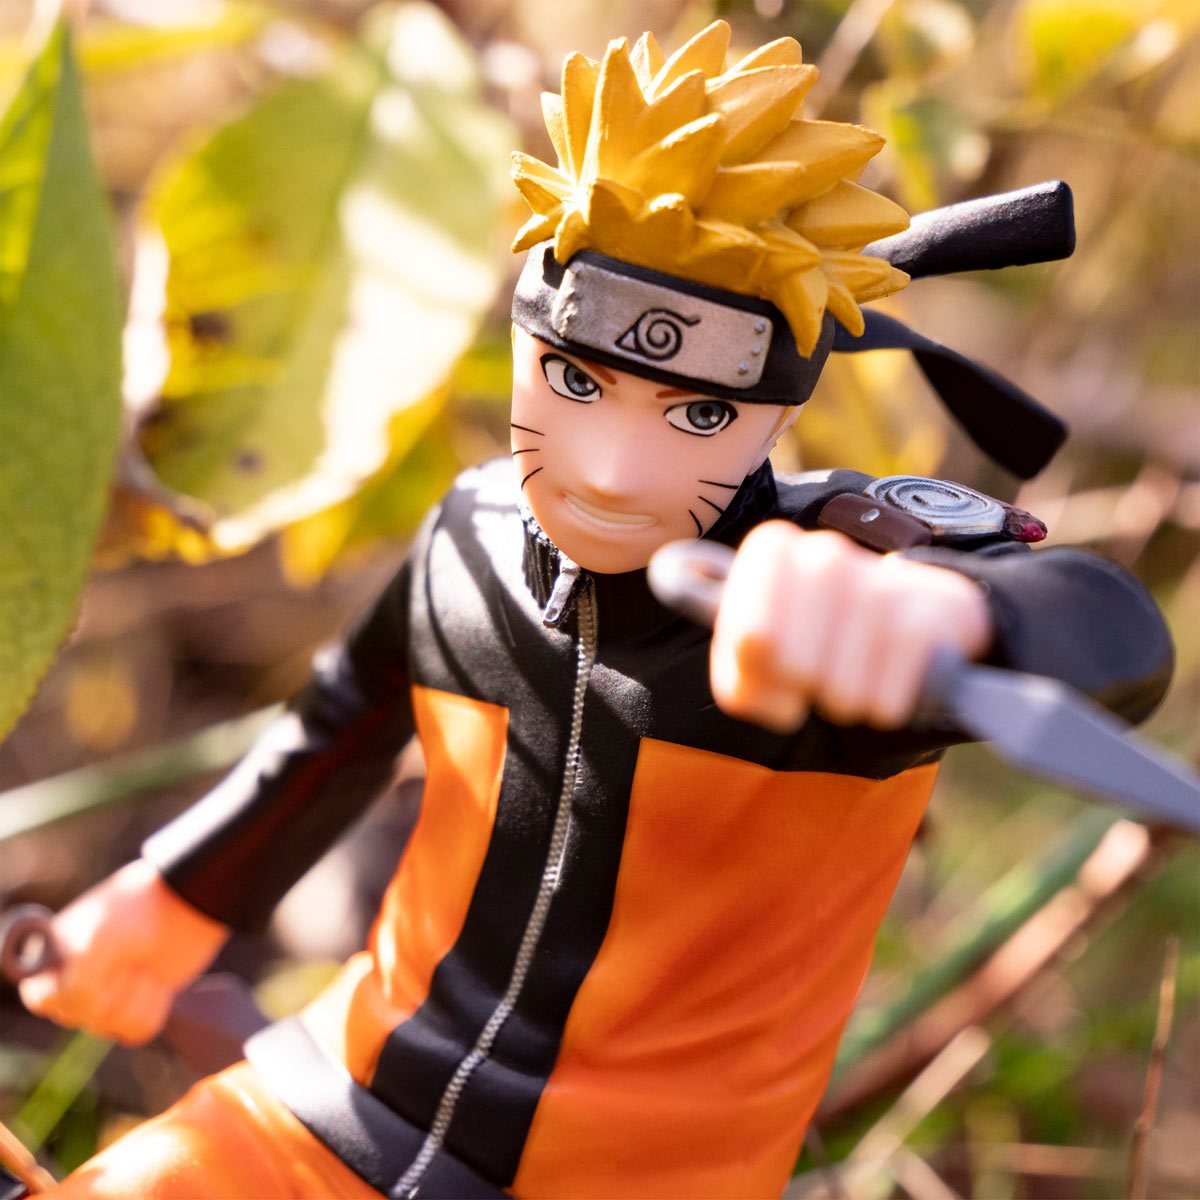 Naruto Shippuden - Naruto Uzumaki 1:10 Scale Action Figure